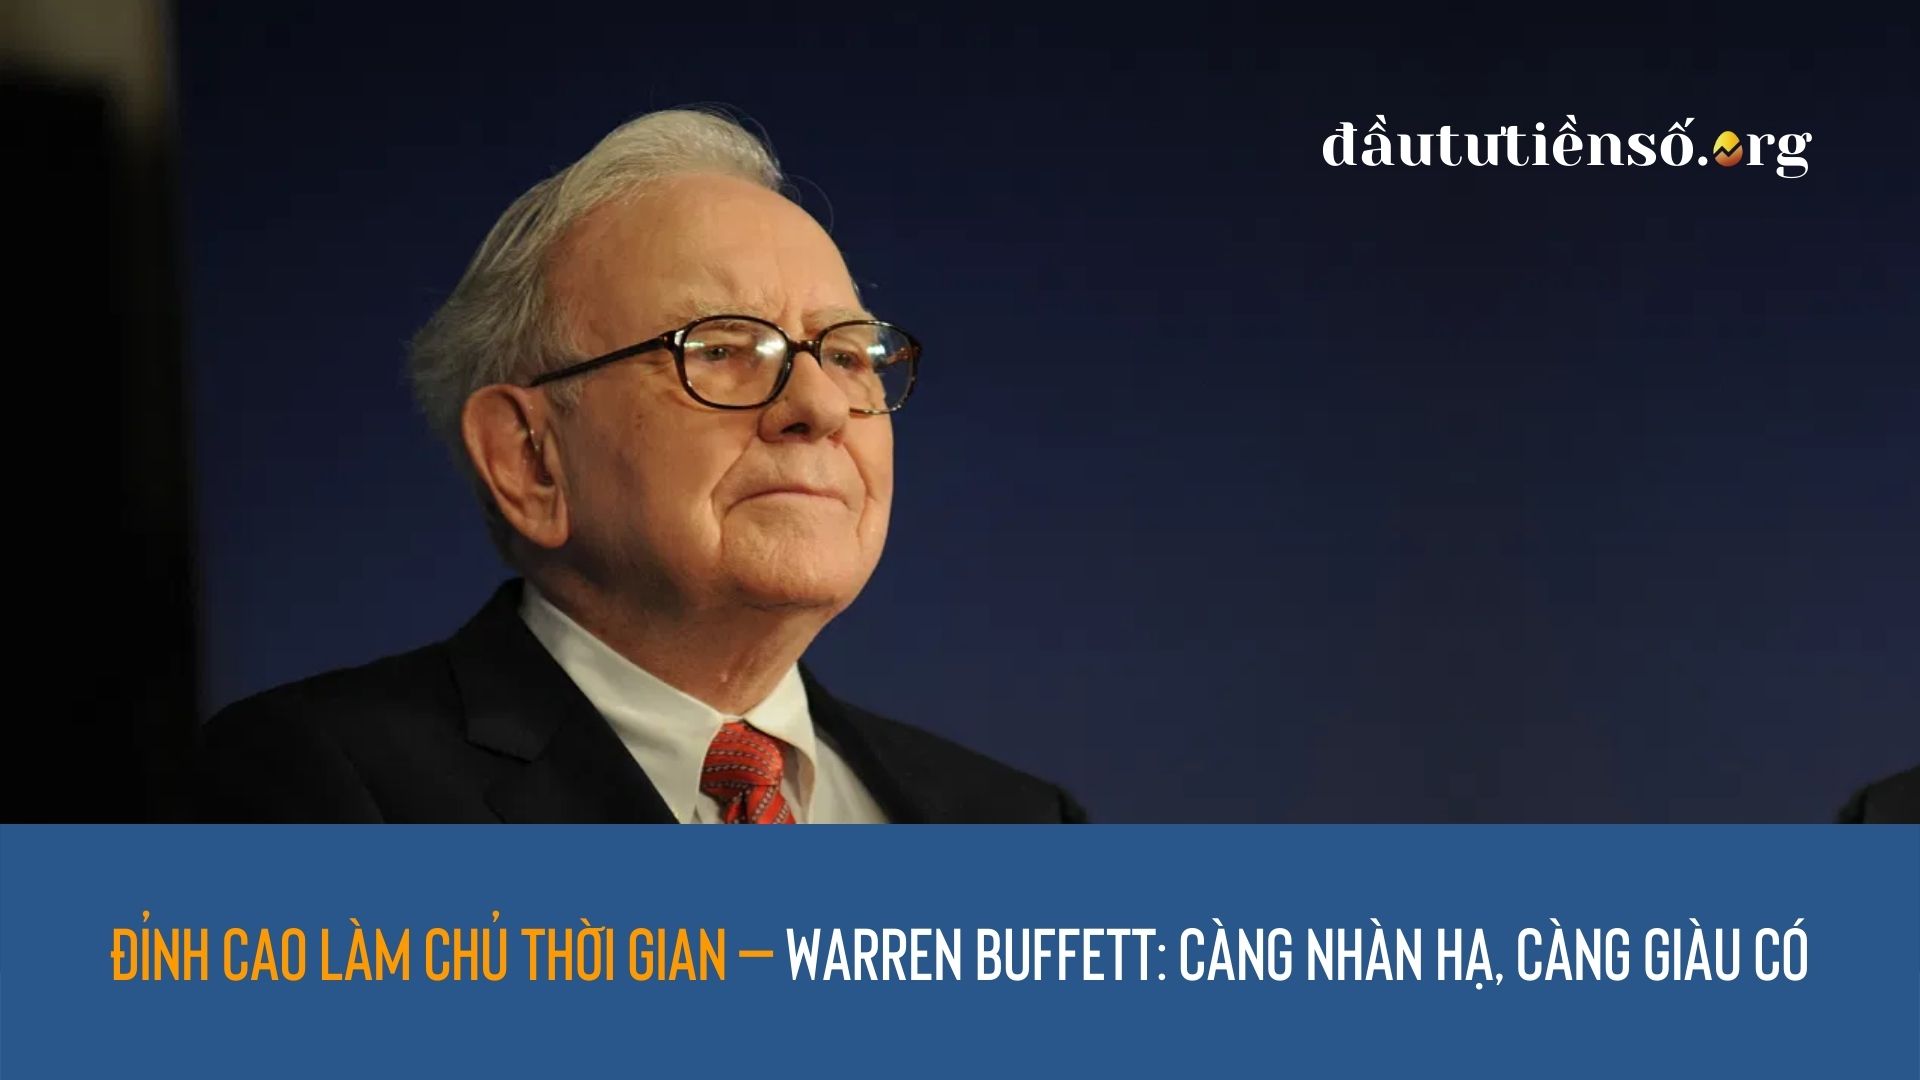 Đỉnh cao làm chủ thời gian – Warren Buffett: Càng nhàn hạ, càng giàu có